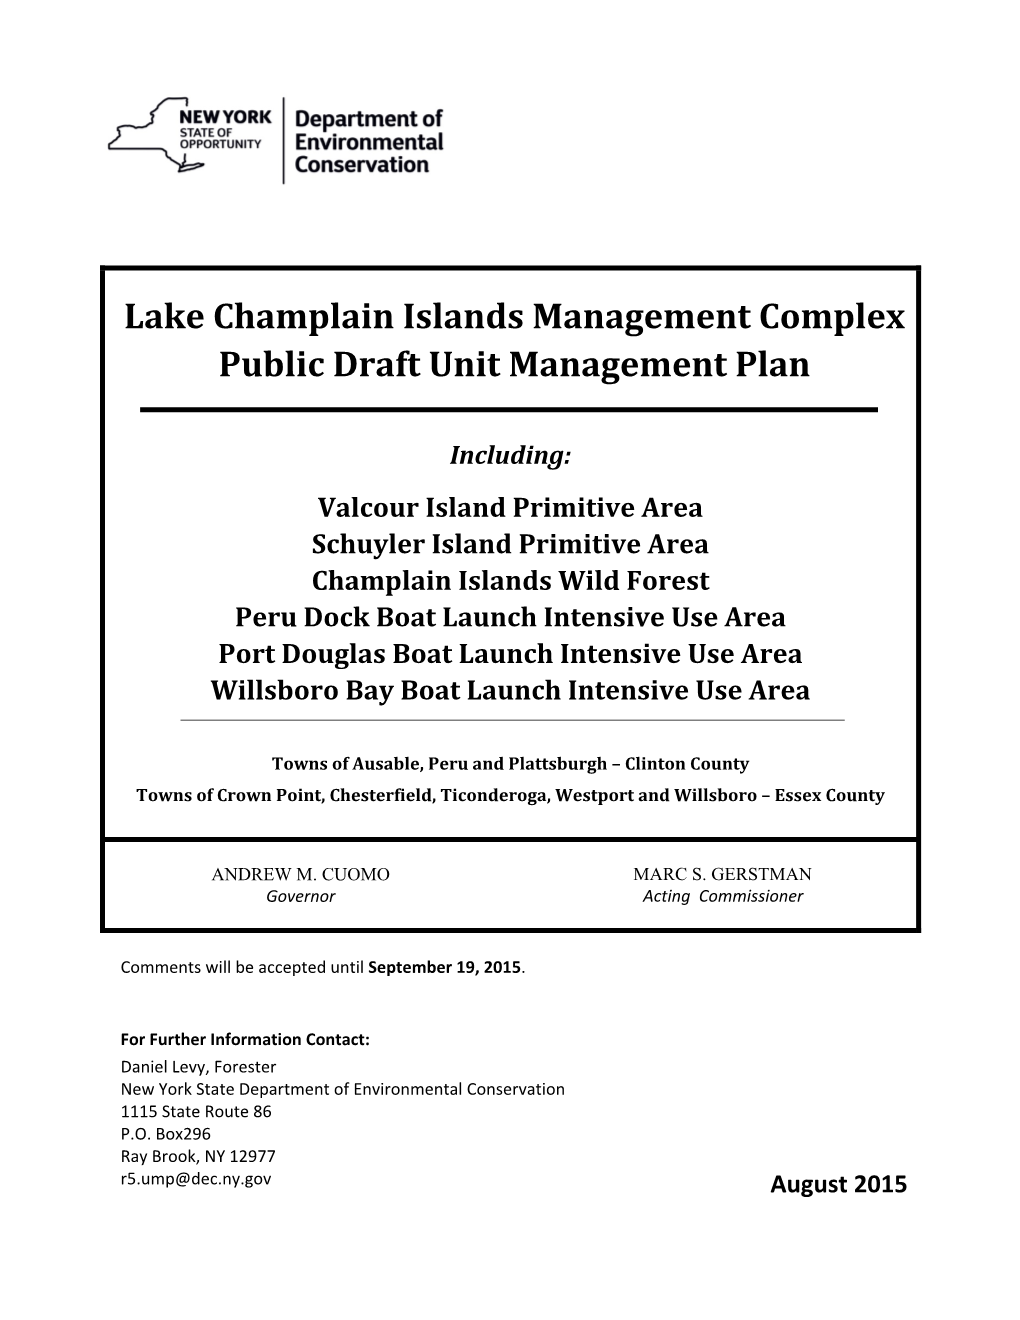 Lake Champlain Islands Management Complex Public Draft Unit Management Plan